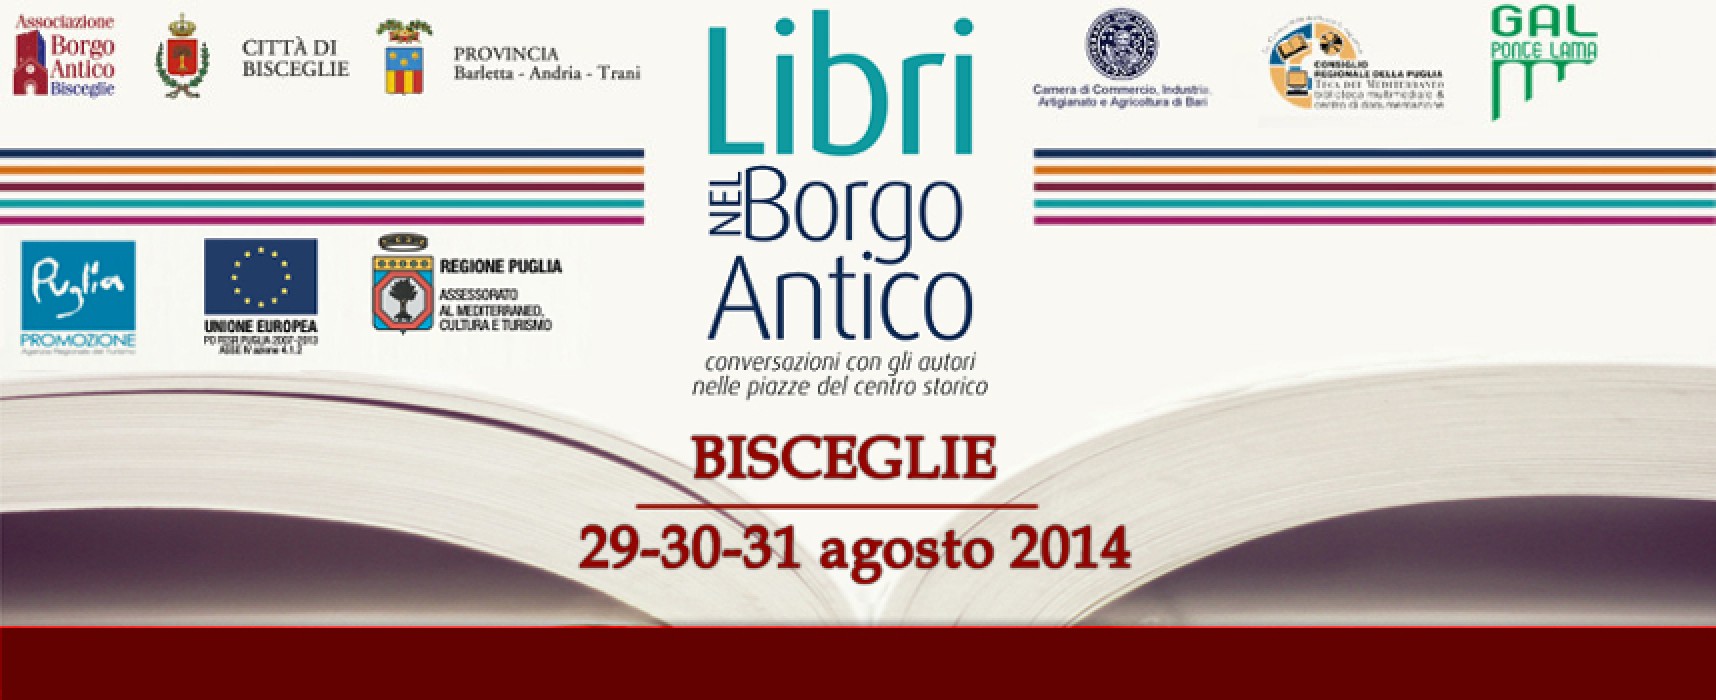 Libri nel Borgo Antico, si comincia: tutti gli autori impegnati venerdì 29 agosto